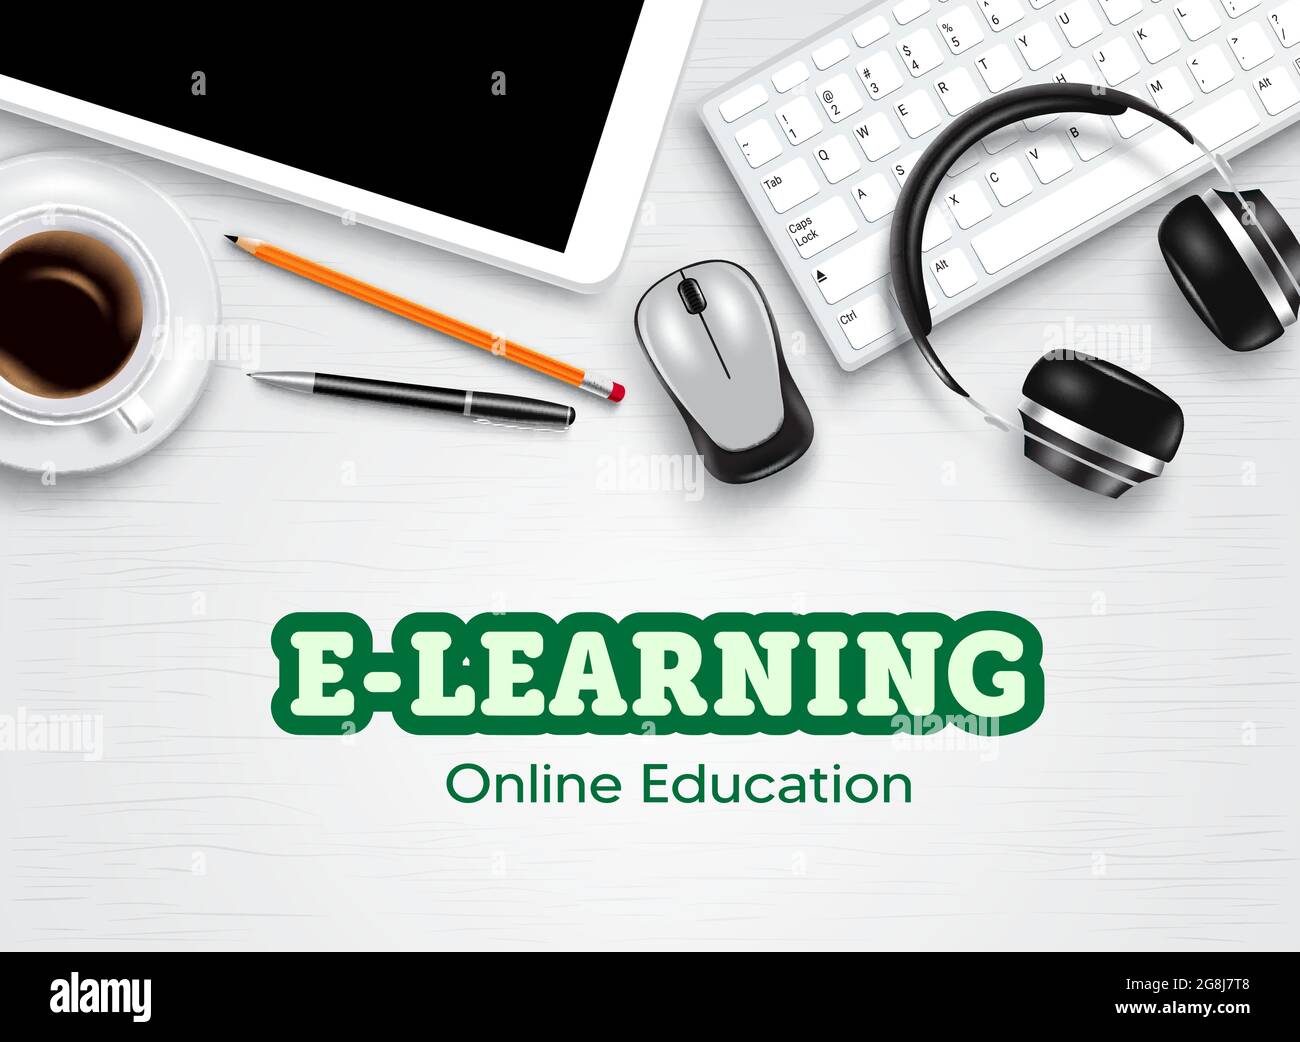 Đào tạo trực tuyến là công cụ hỗ trợ giúp các bạn học viên tiếp cận kiến thức một cách tiện lợi và linh hoạt nhất. Bạn không cần đi đến lớp học truyền thống, chỉ cần với một chiếc máy tính và kết nối Internet, các khóa học chất lượng đang chờ đợi bạn ở mọi lúc mọi nơi. 